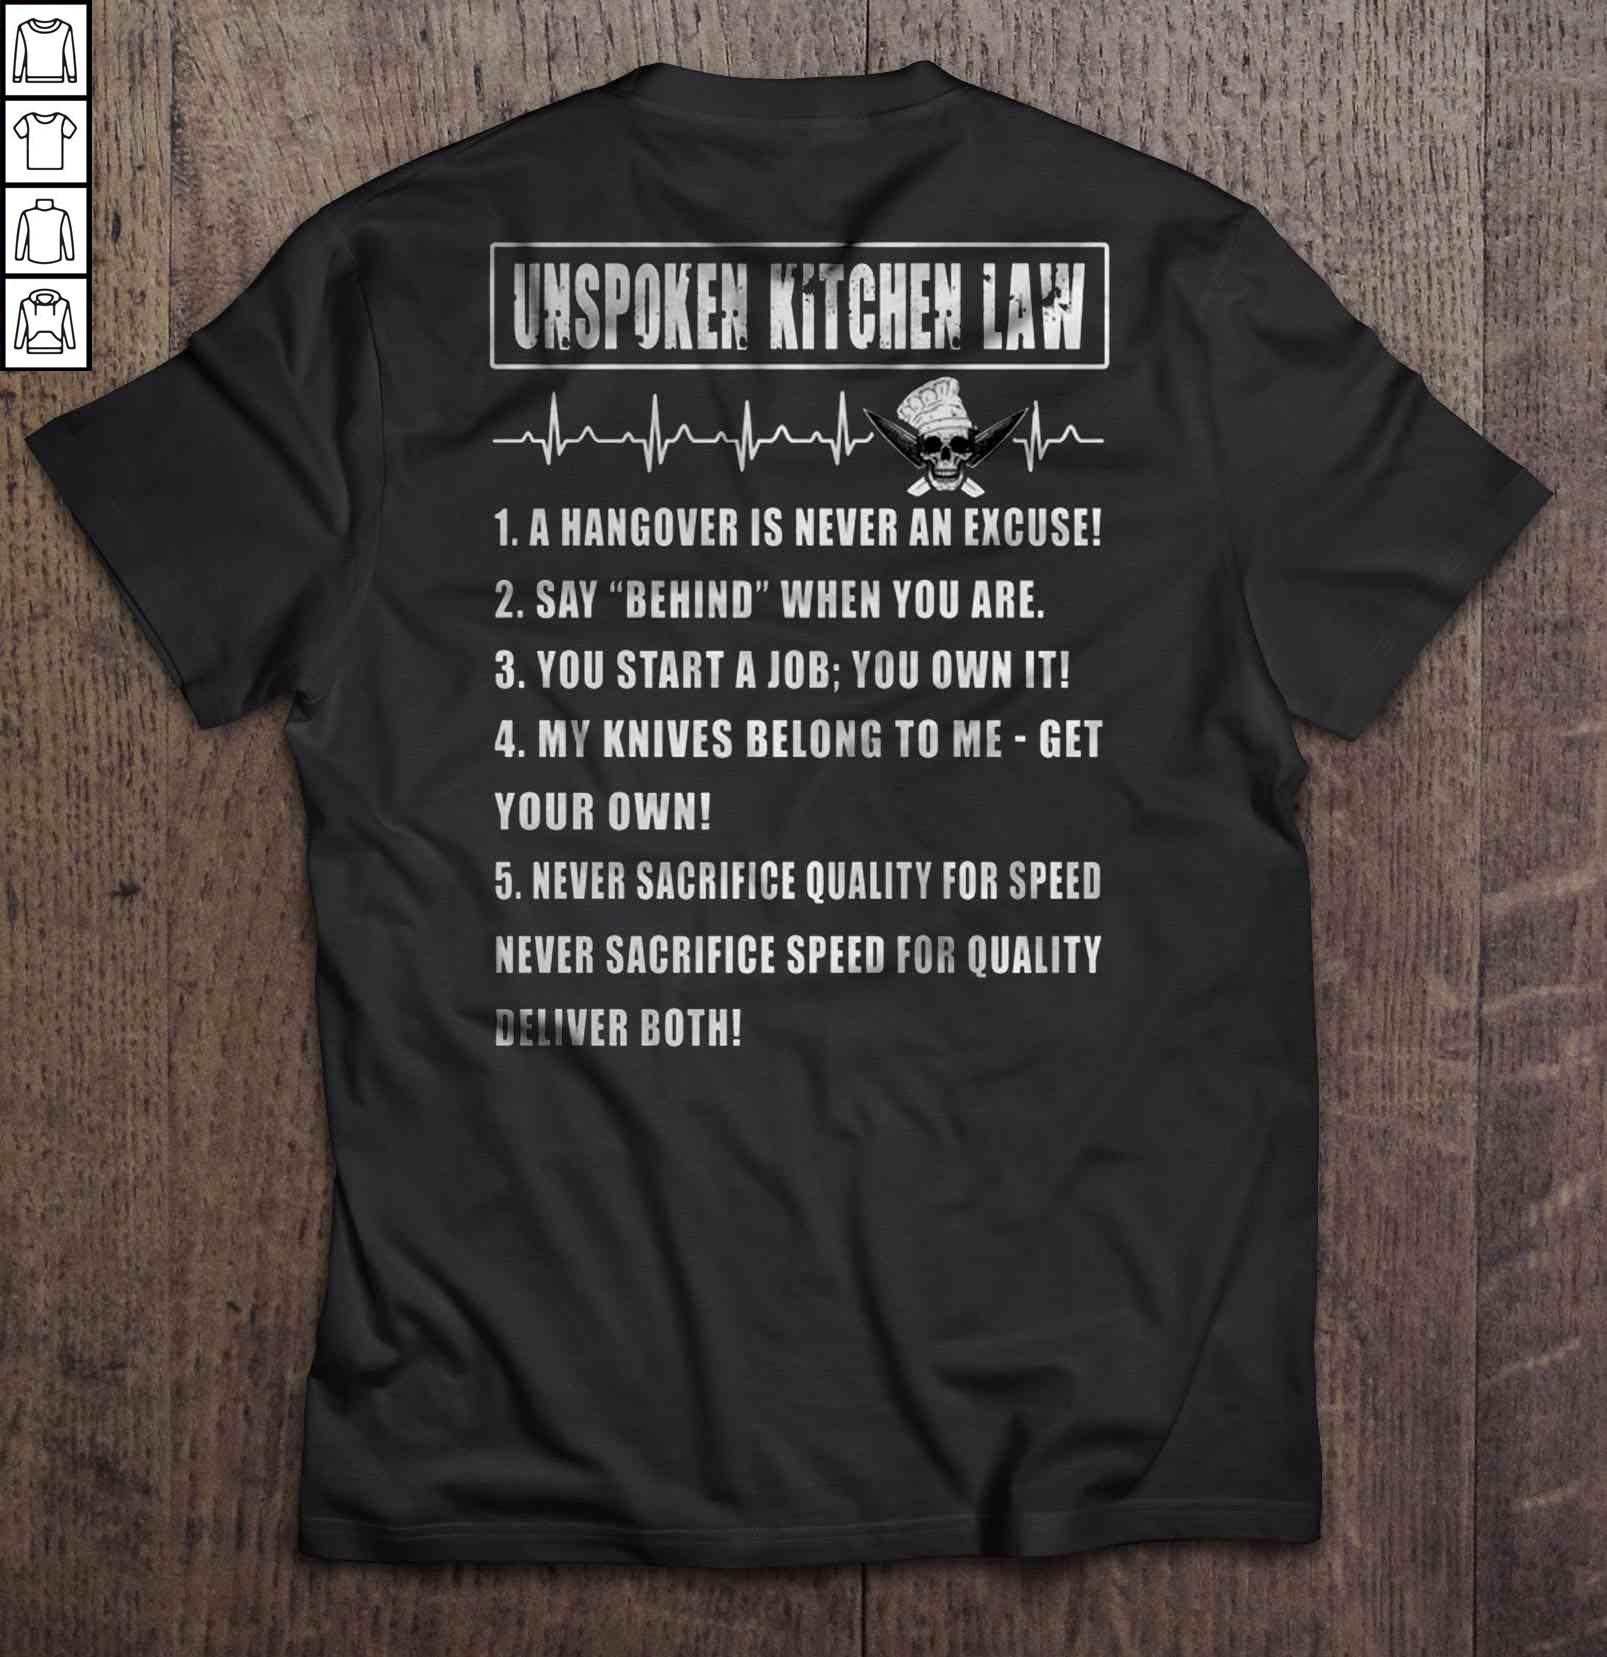 Unspoken Kitchen Law – Chef Shirt